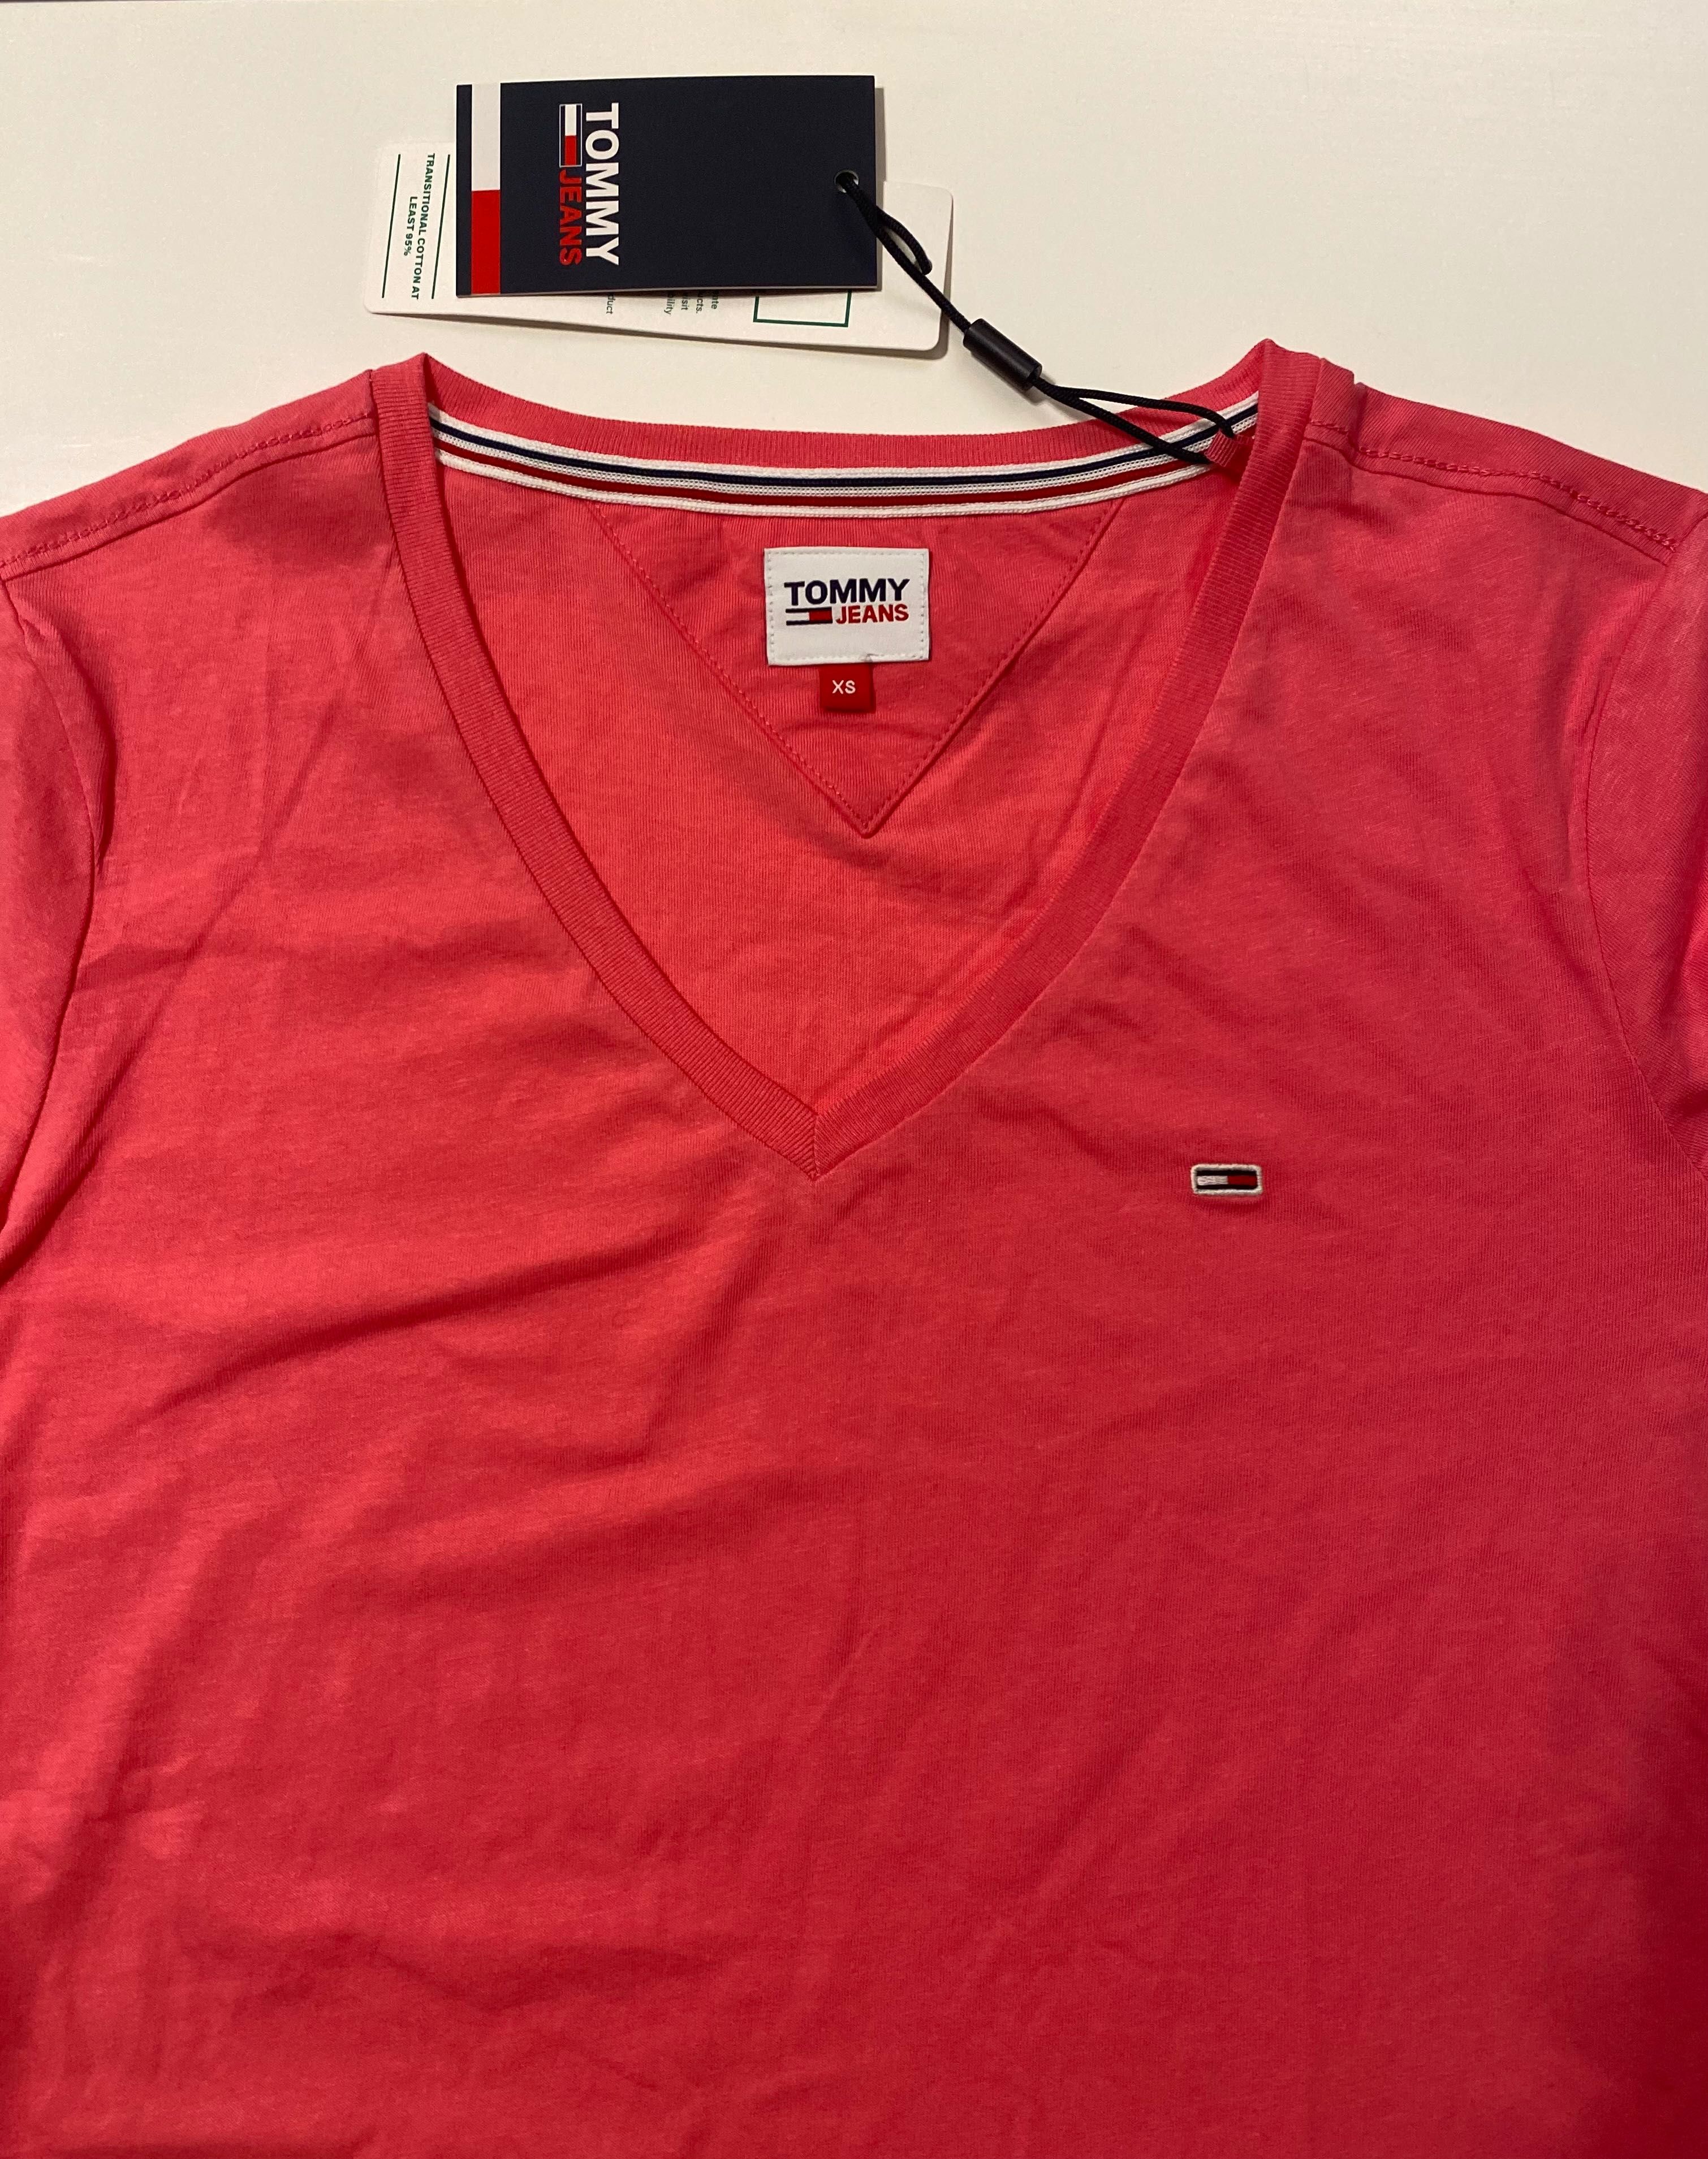 Koszulka T-shirt Tommy Hilfiger Jeans różowa XS nowa z metką